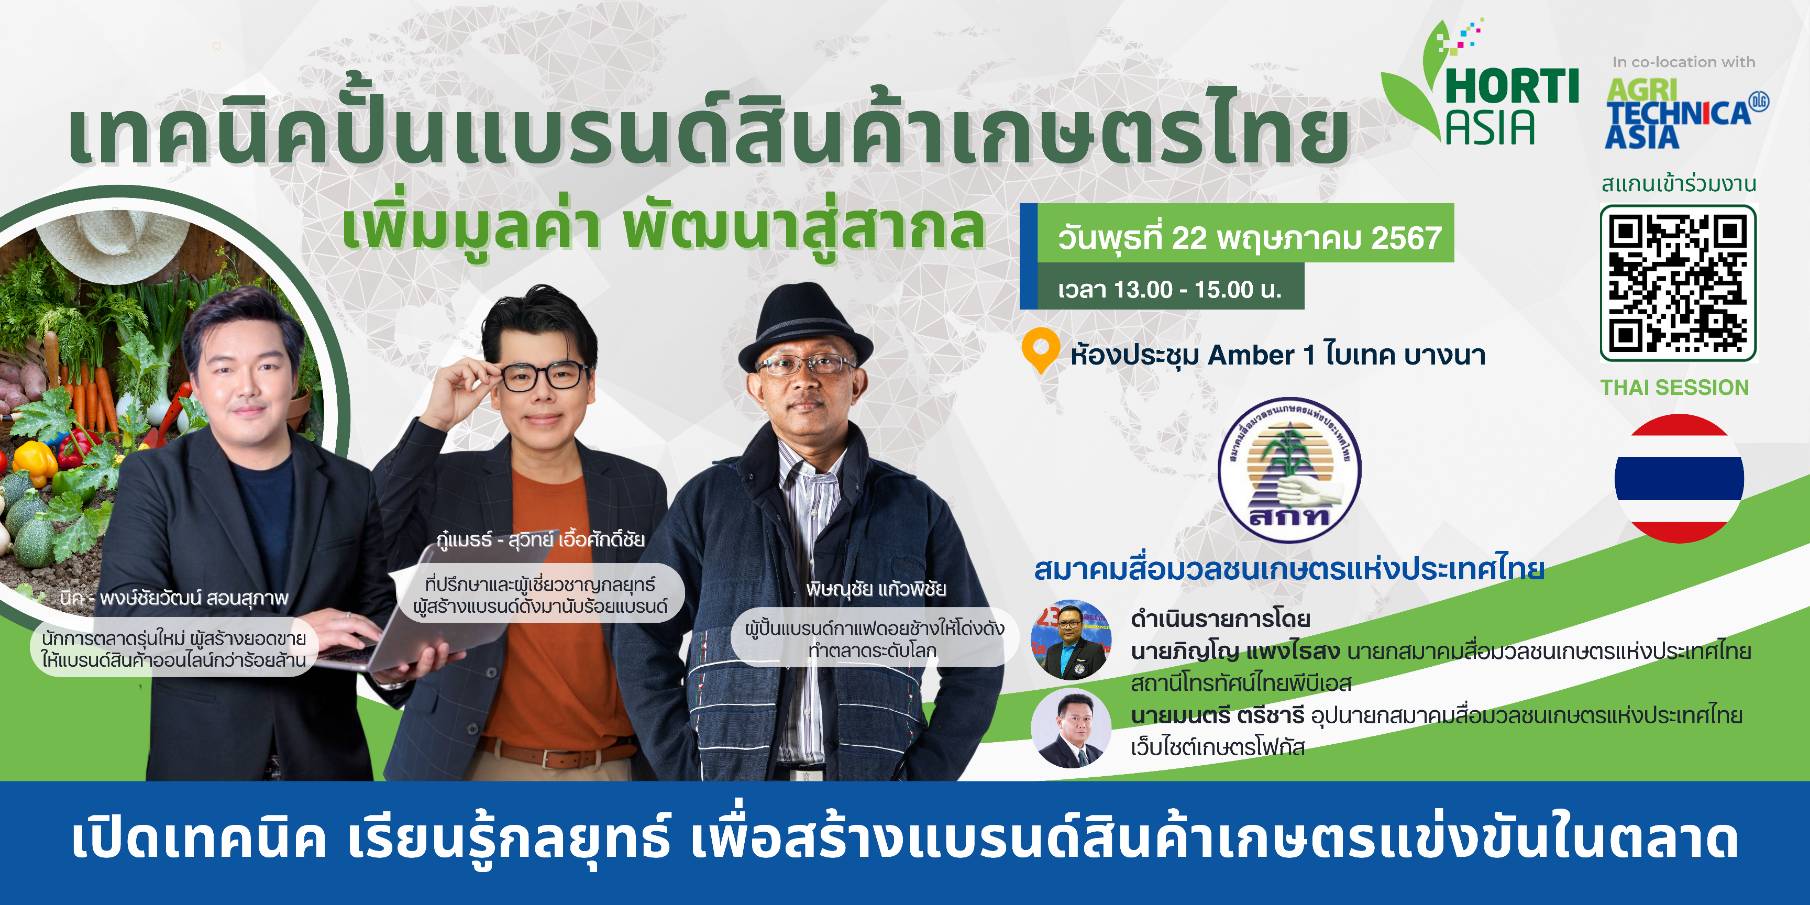 สมาคมสื่อมวลชนเกษตรฯ-VNU จัดสัมมนา “เทคนิคปั้นแบรนด์สินค้าเกษตรไทยฯ”